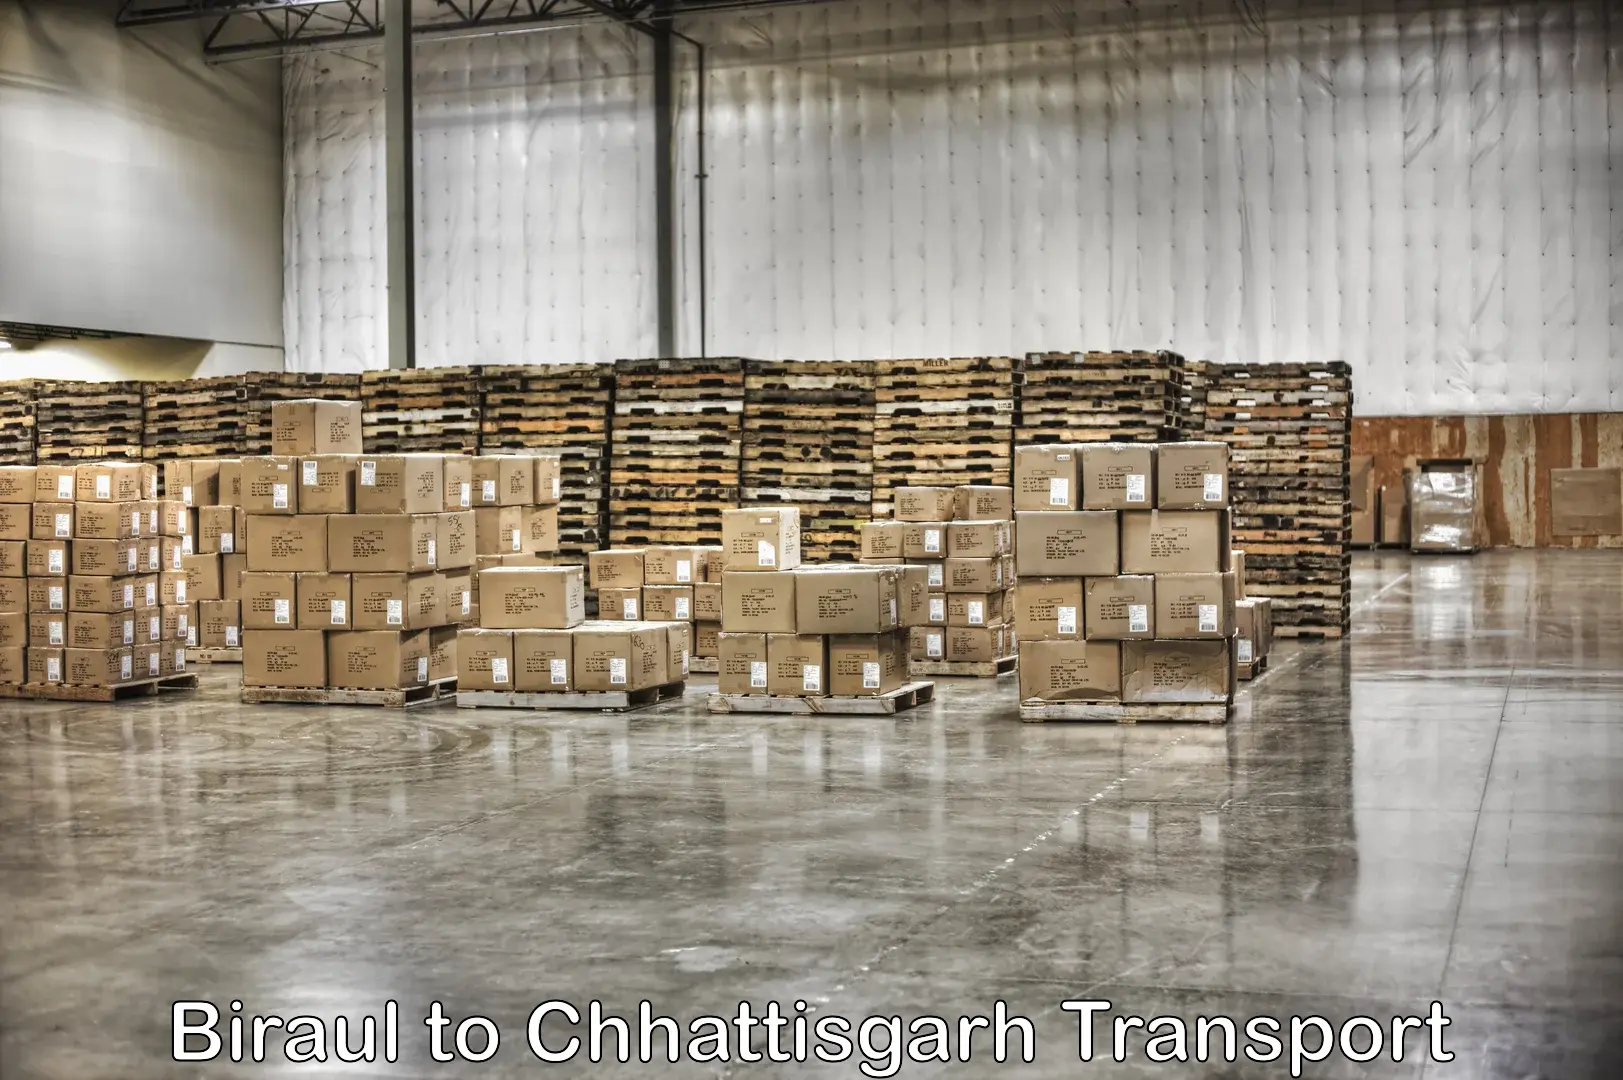 Goods delivery service Biraul to Chhattisgarh